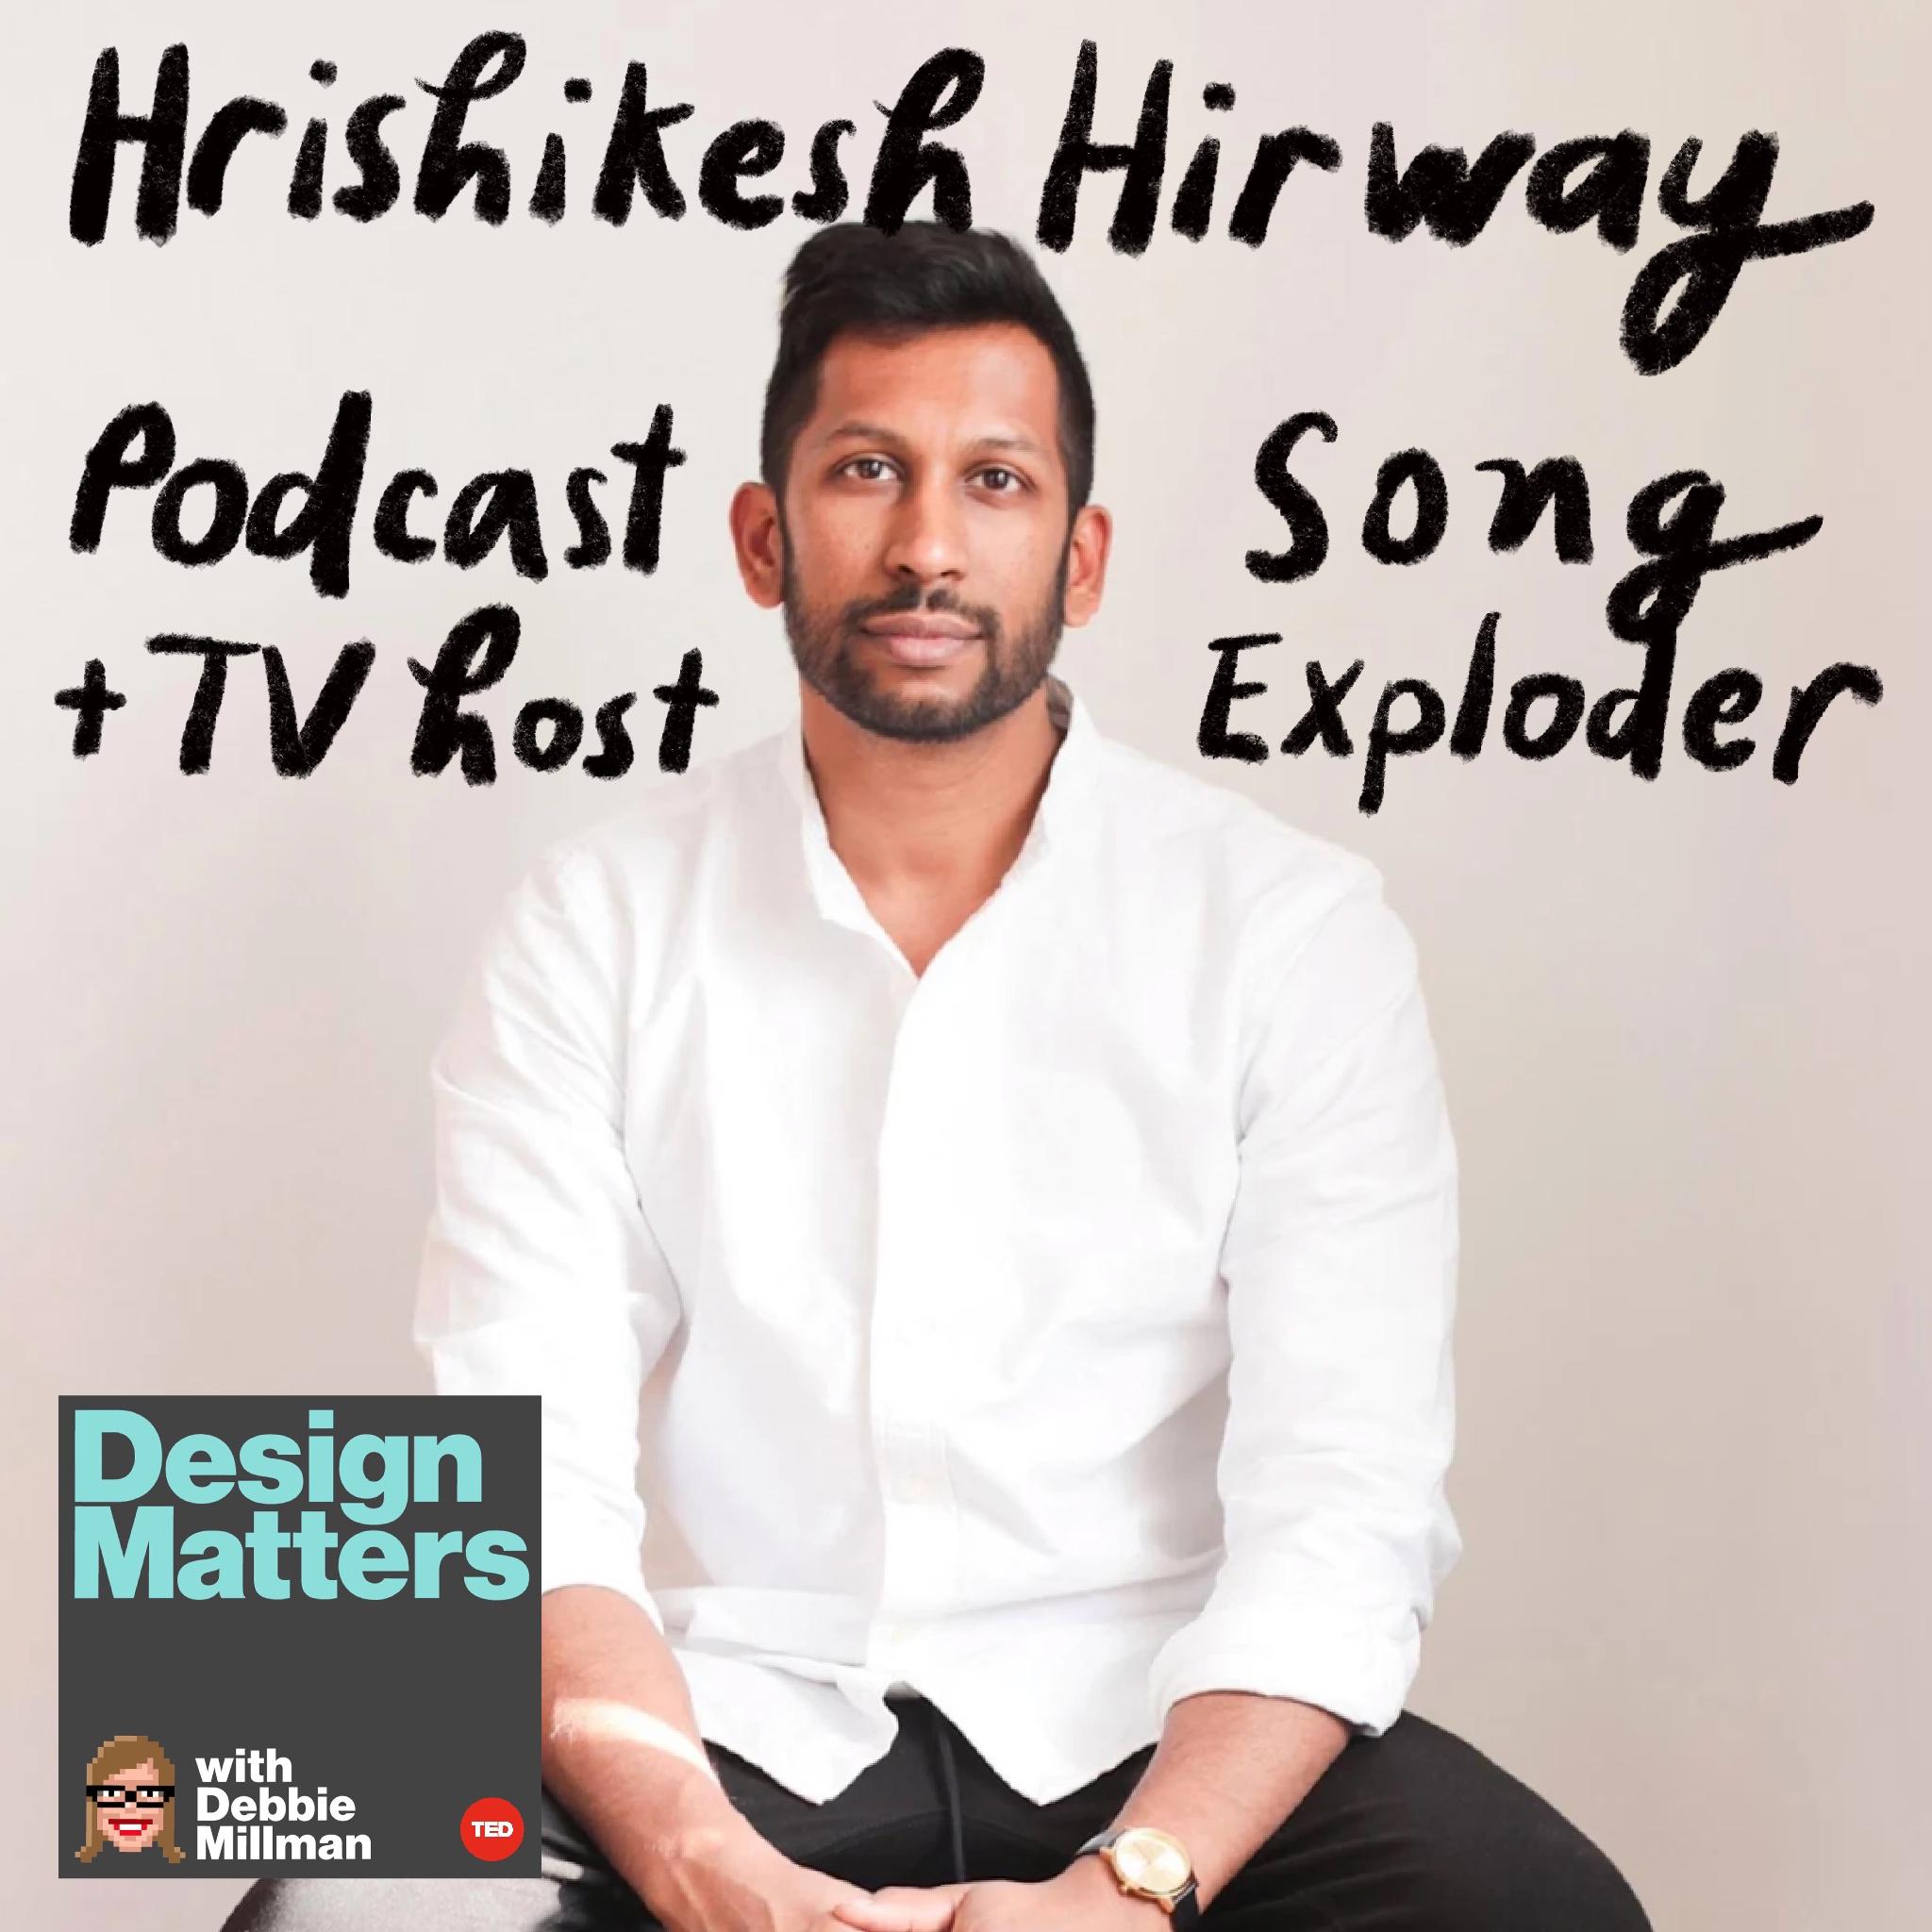 Thumbnail for "Hrishikesh Hirway".